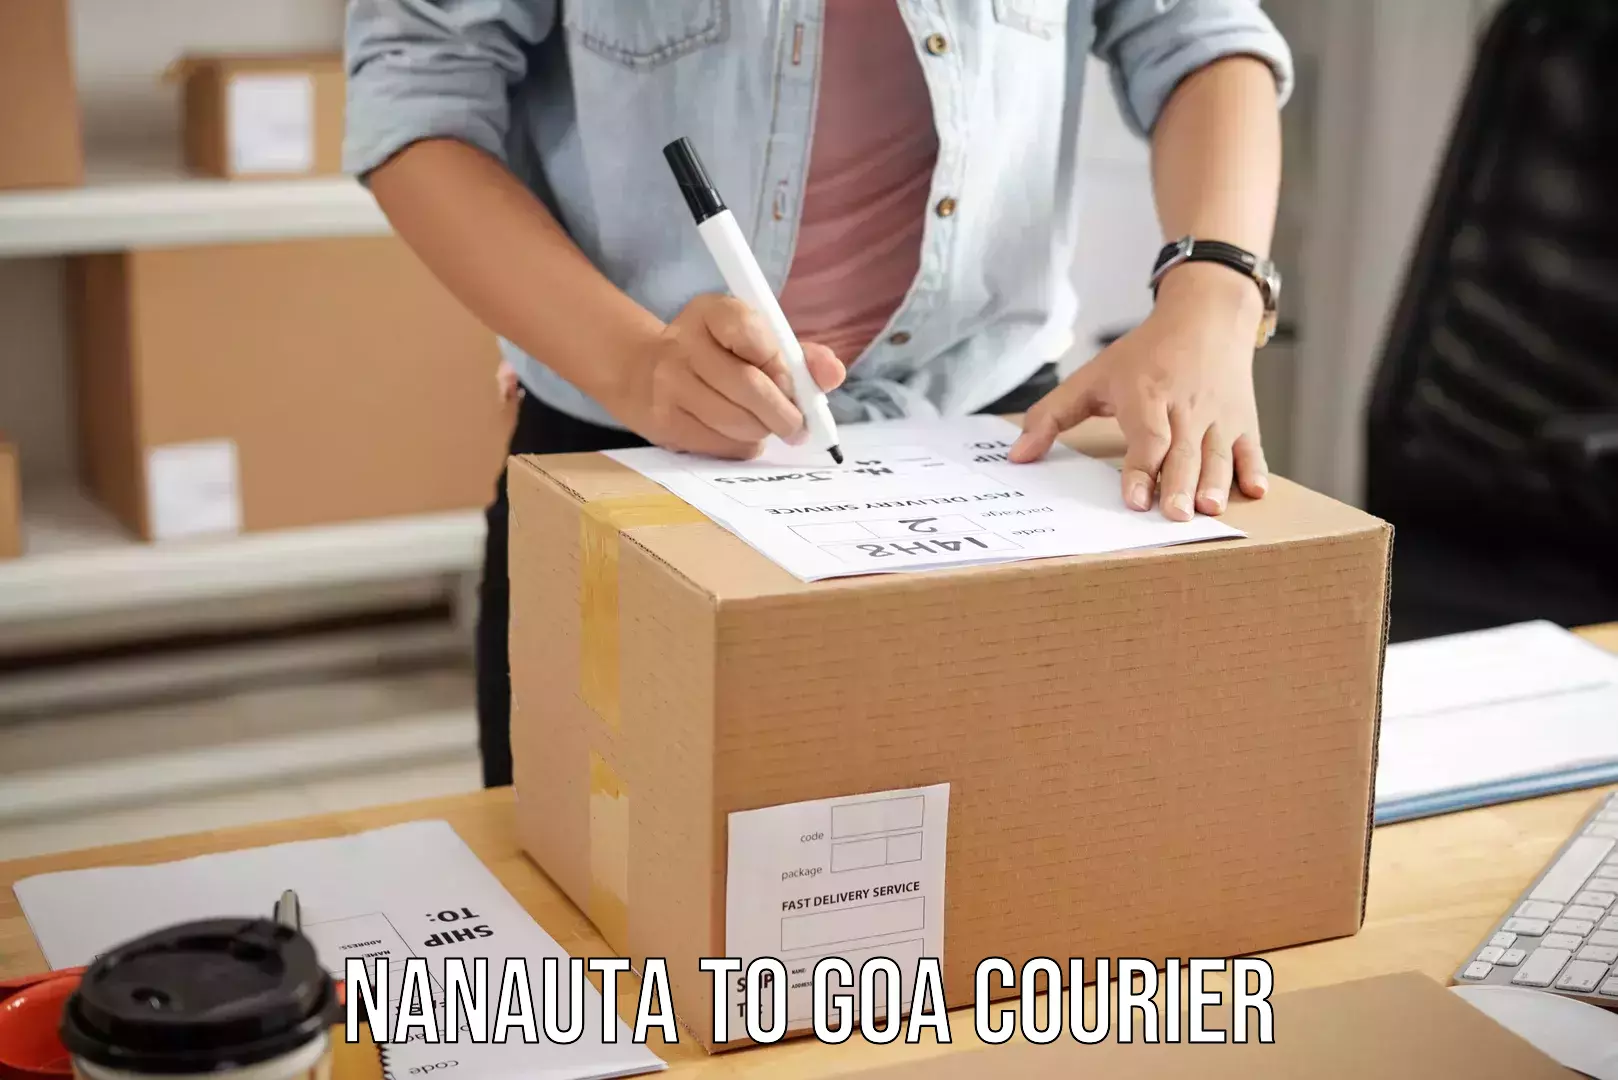 Luggage delivery estimate Nanauta to NIT Goa